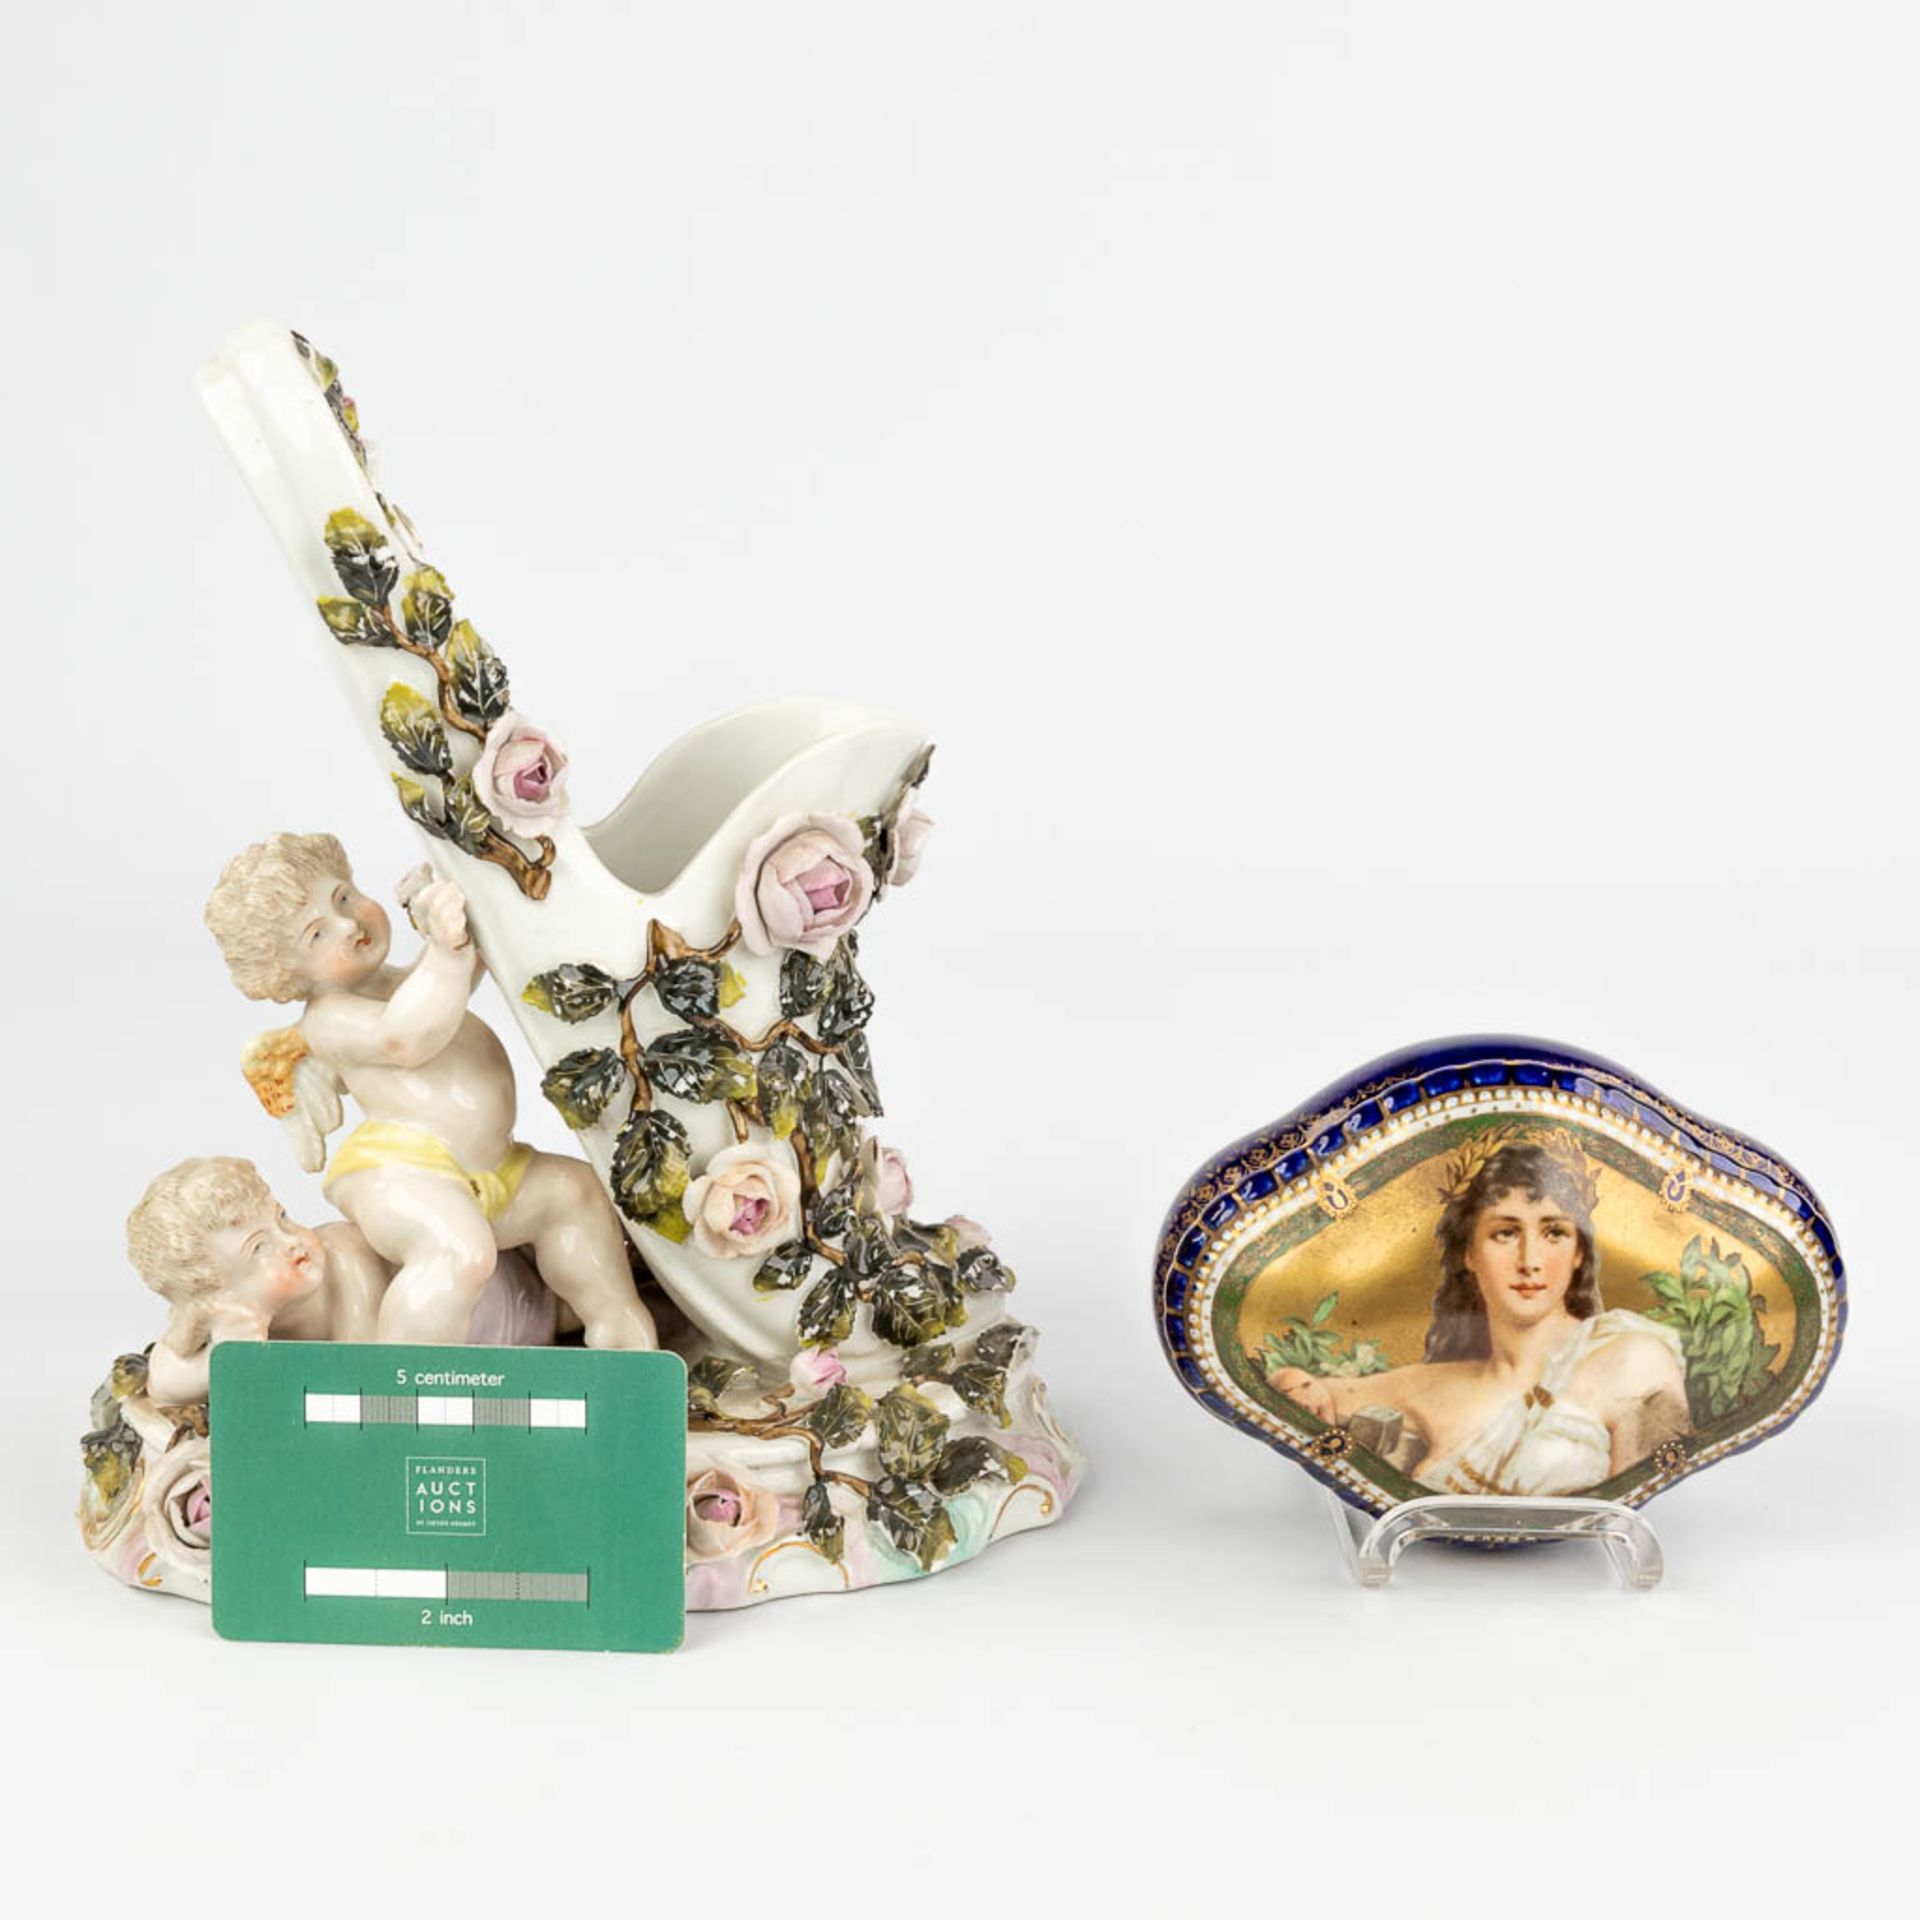 Sitzendorf & 'Royal Vienna' a set of 2 porcelain items. (L:12 x W:20 x H:23 cm) - Image 7 of 22